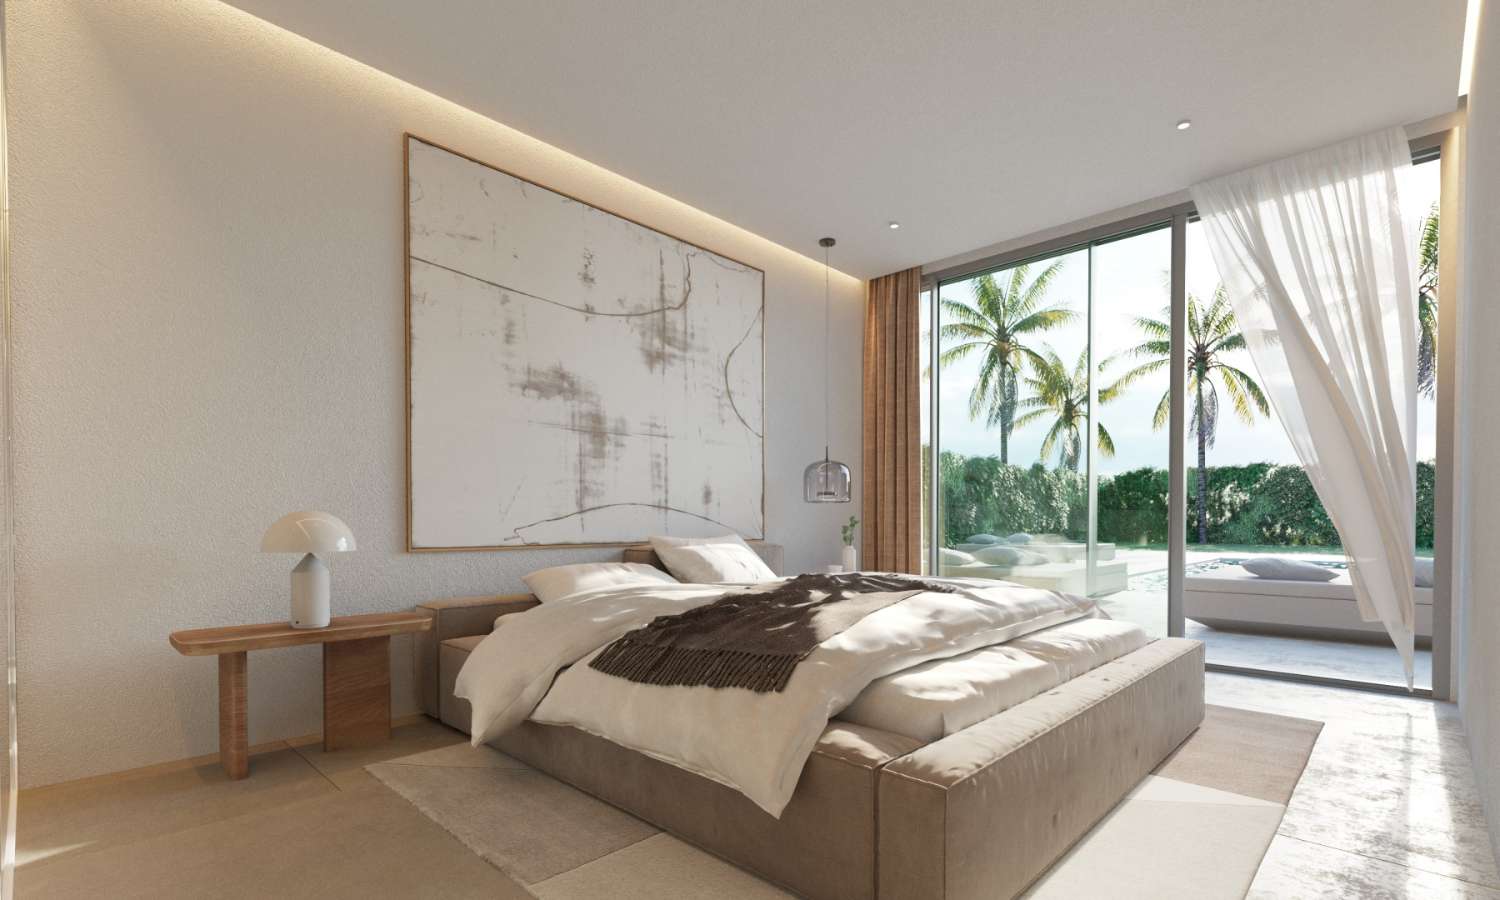 Villa design avec les meilleures qualités dans l’environnement naturel et le service de conciergerie dans le Resort